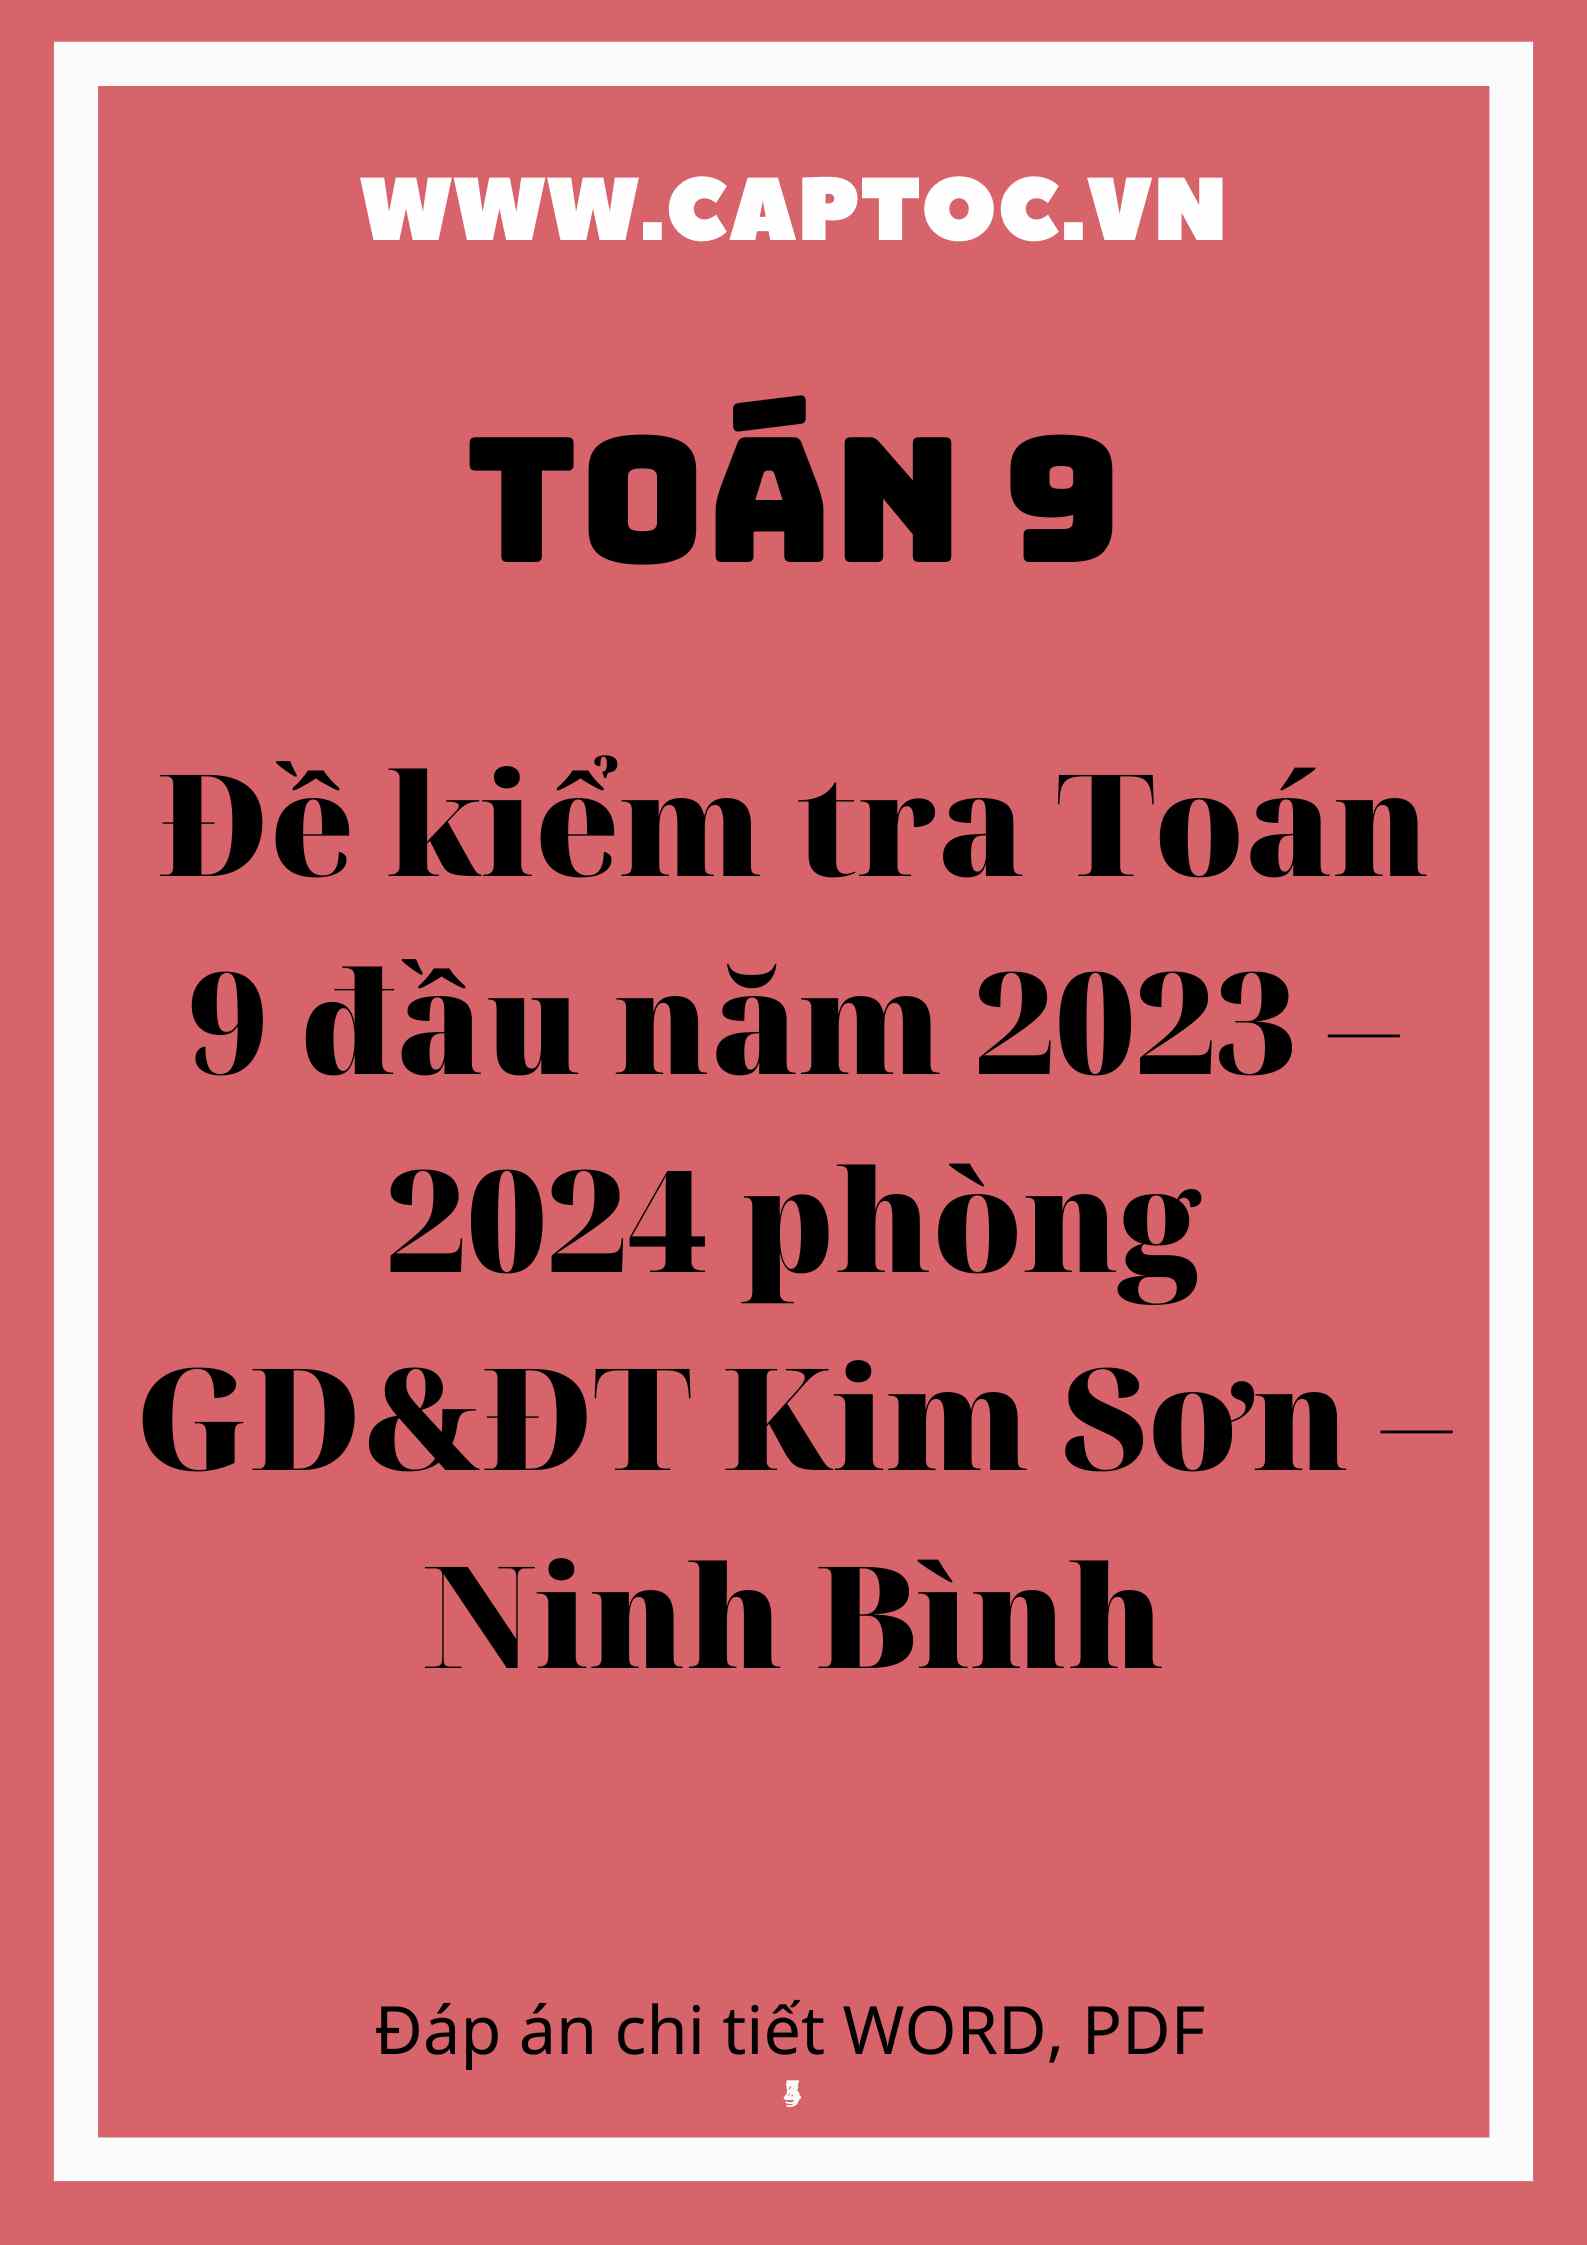 Đề kiểm tra Toán 9 đầu năm 2023 – 2024 phòng GD&ĐT Kim Sơn – Ninh Bình